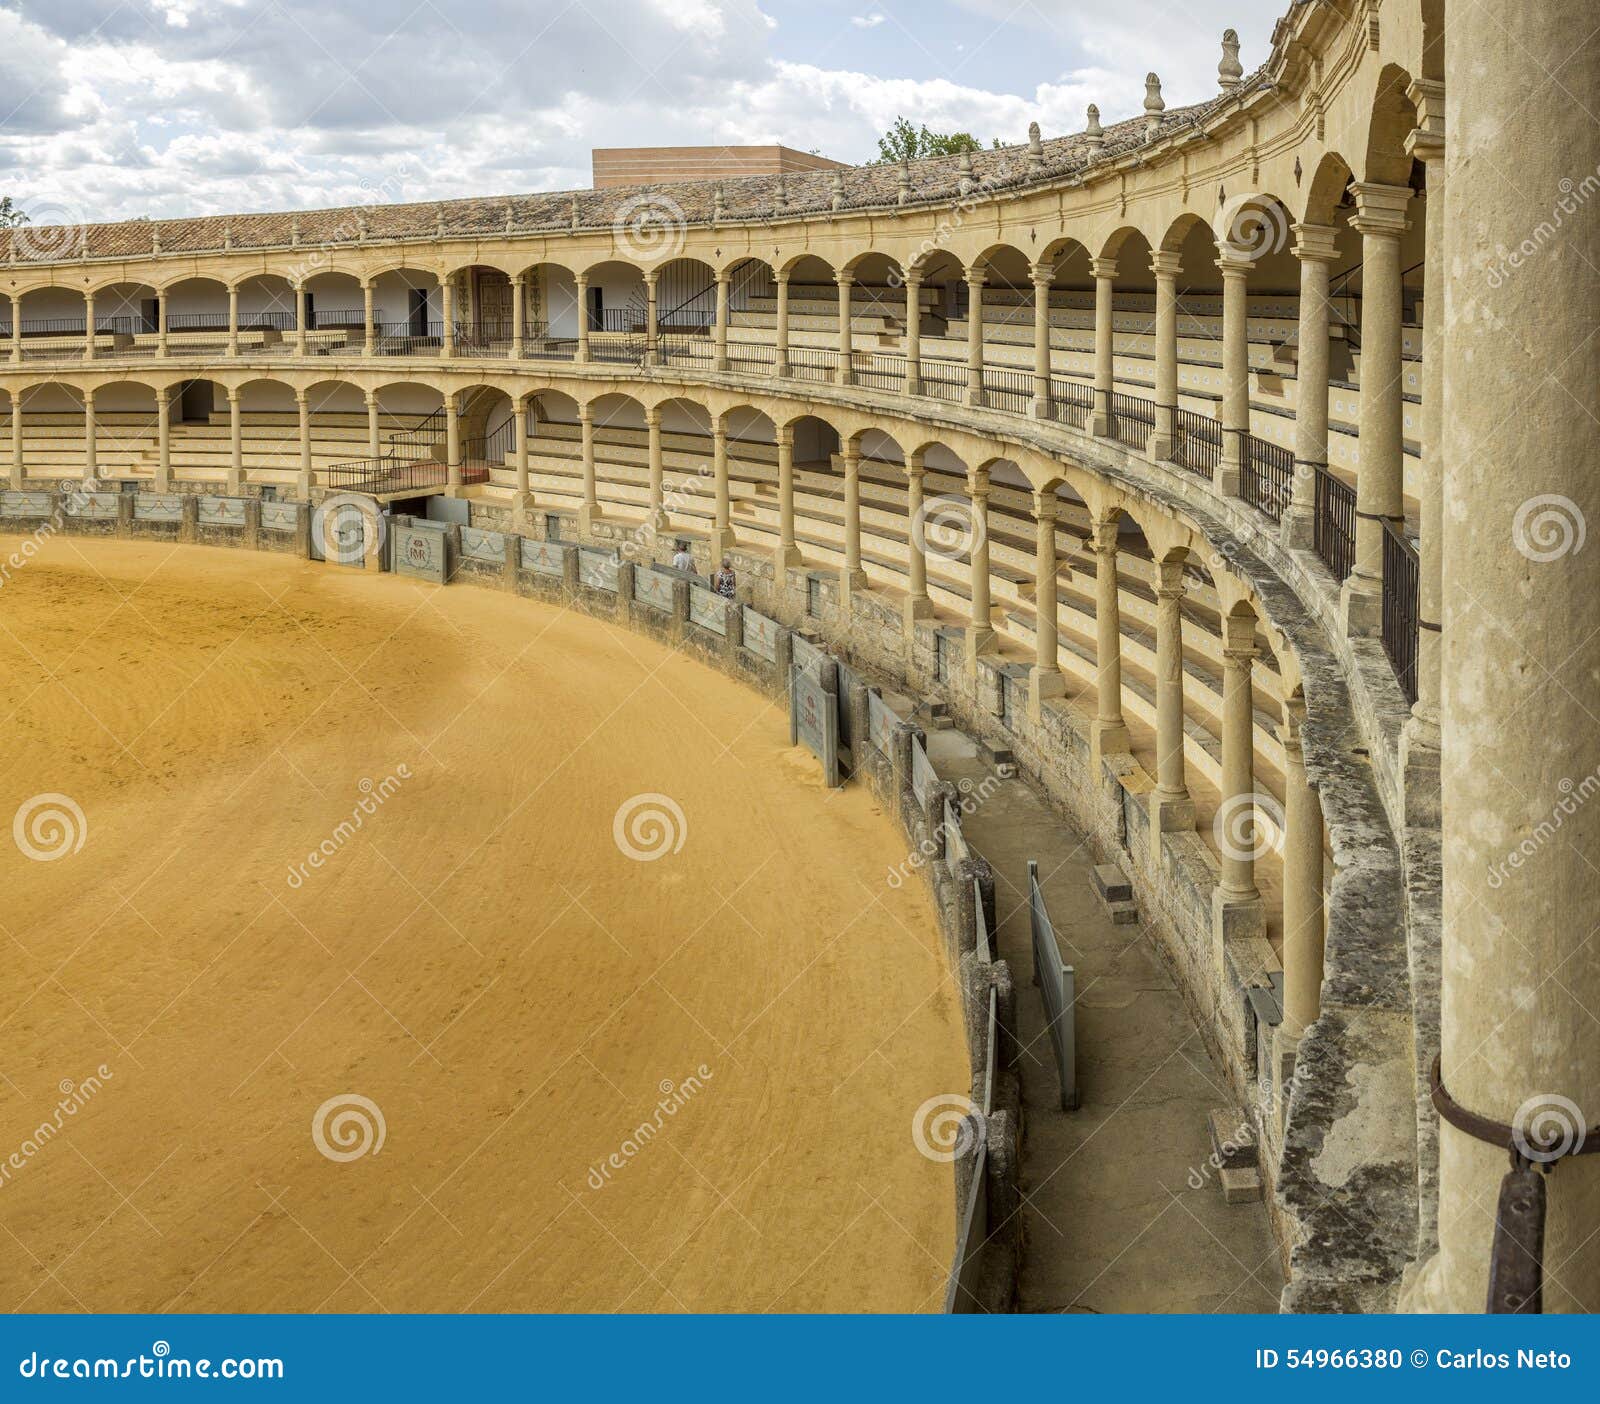 plaza de toros de ronda, the oldest bullfighting ring in spain